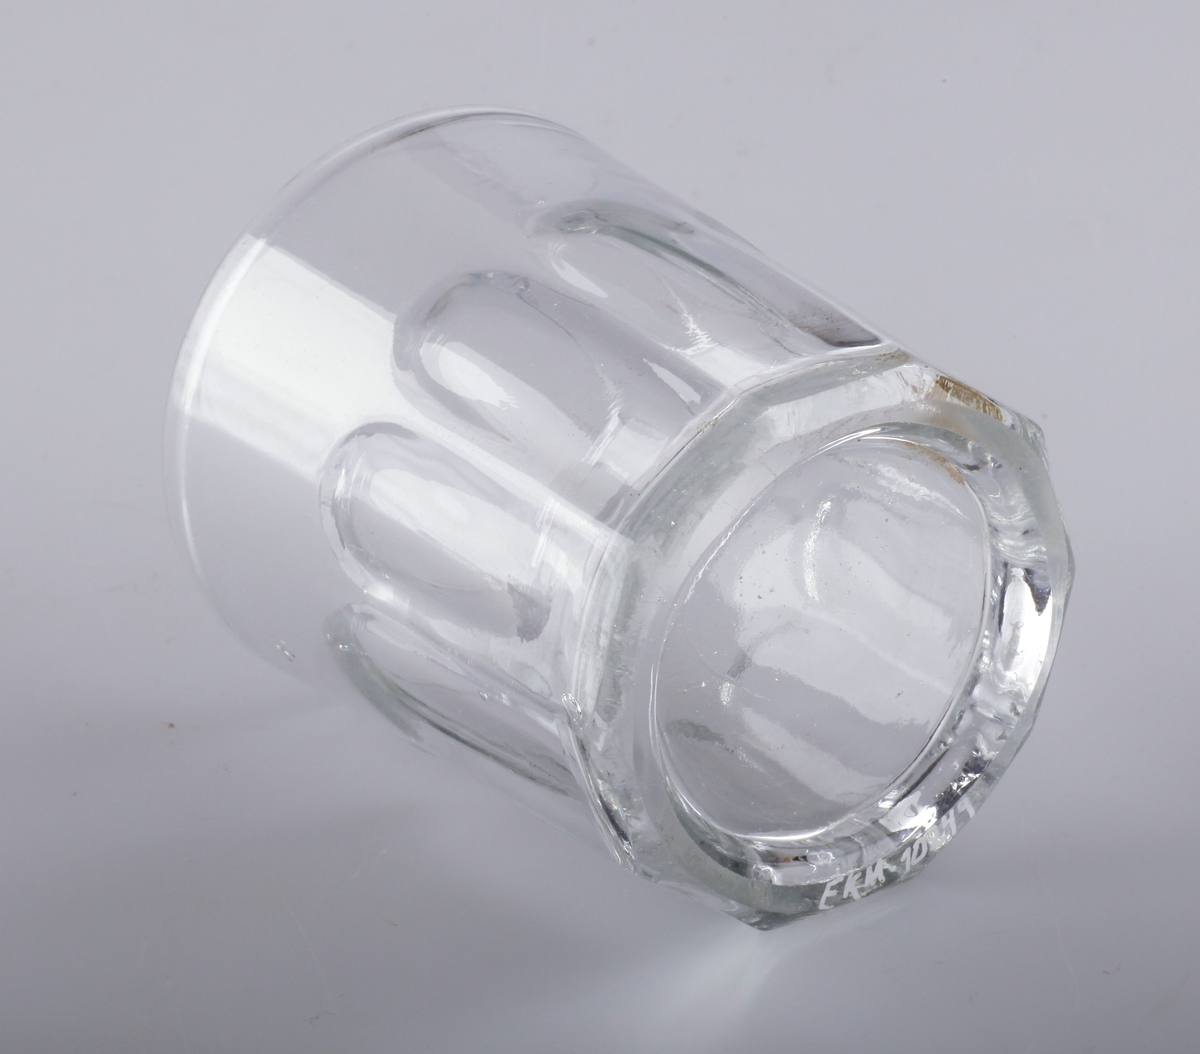 Munnblåst glass, blåst i form med flater som skal illudere slipning. Glasset er tykt og har mange ujevnheter og bobler i glassmassen. Bunnringen er slipt, slik at glasset står plant.